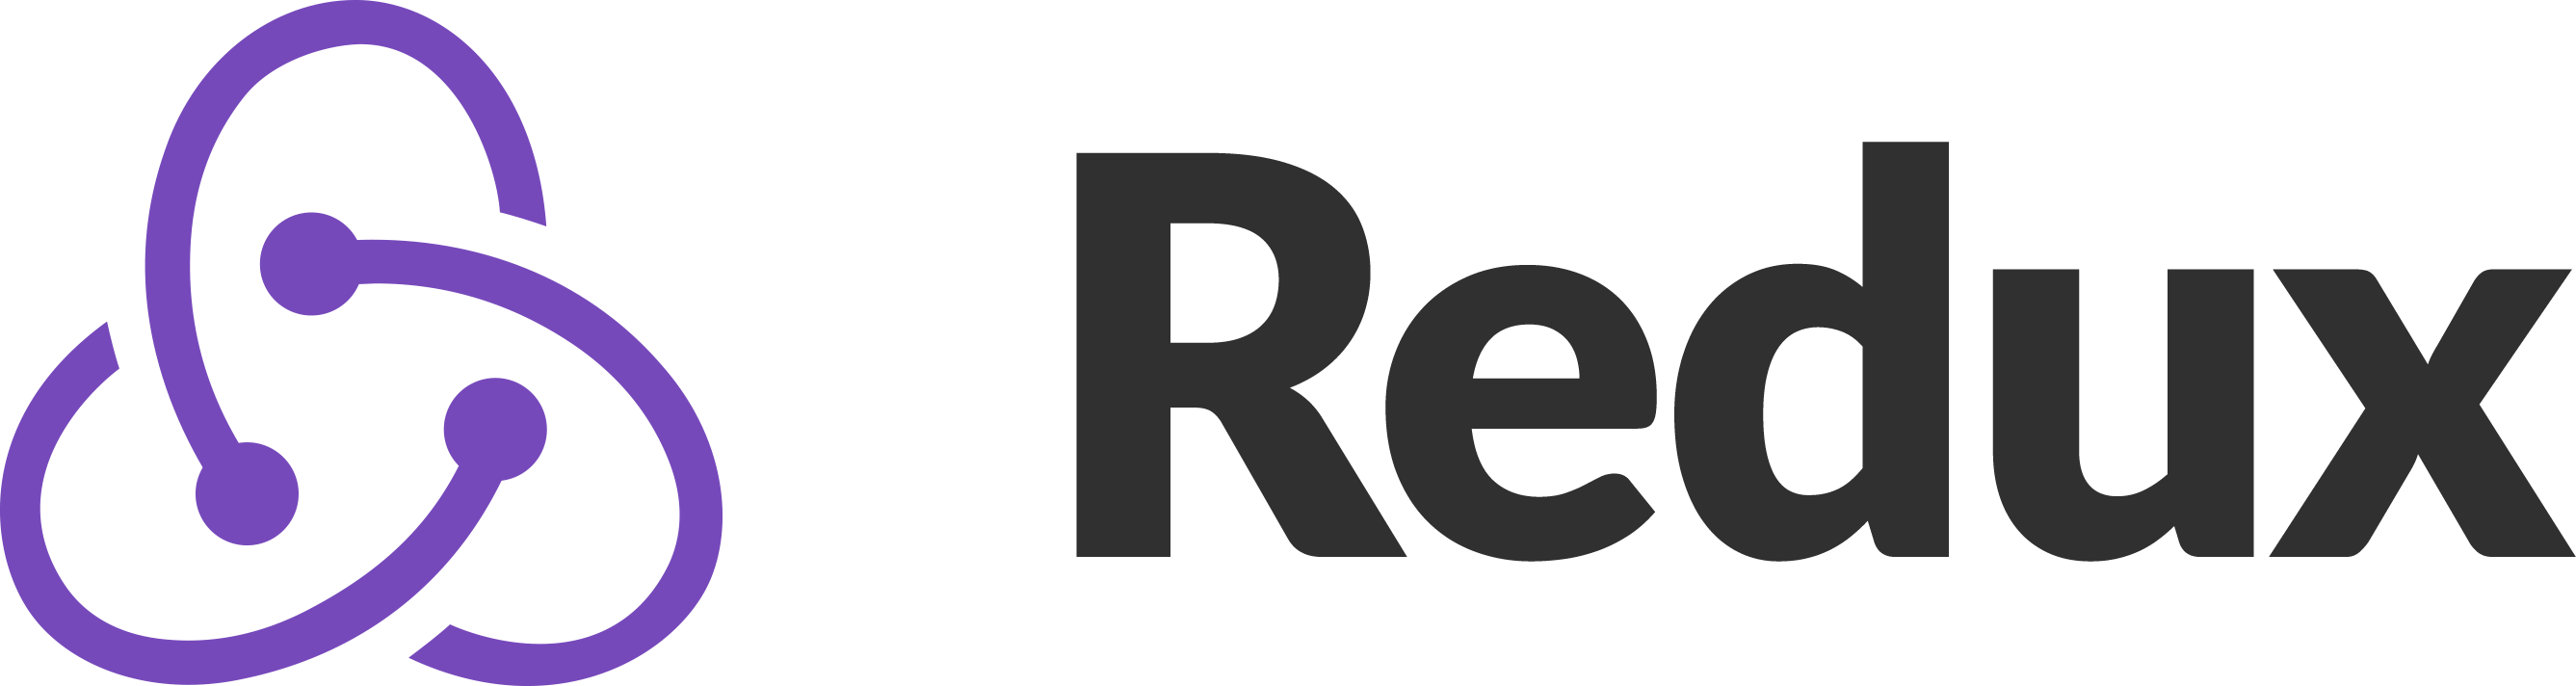 лого Redux библиотеки JavaScript